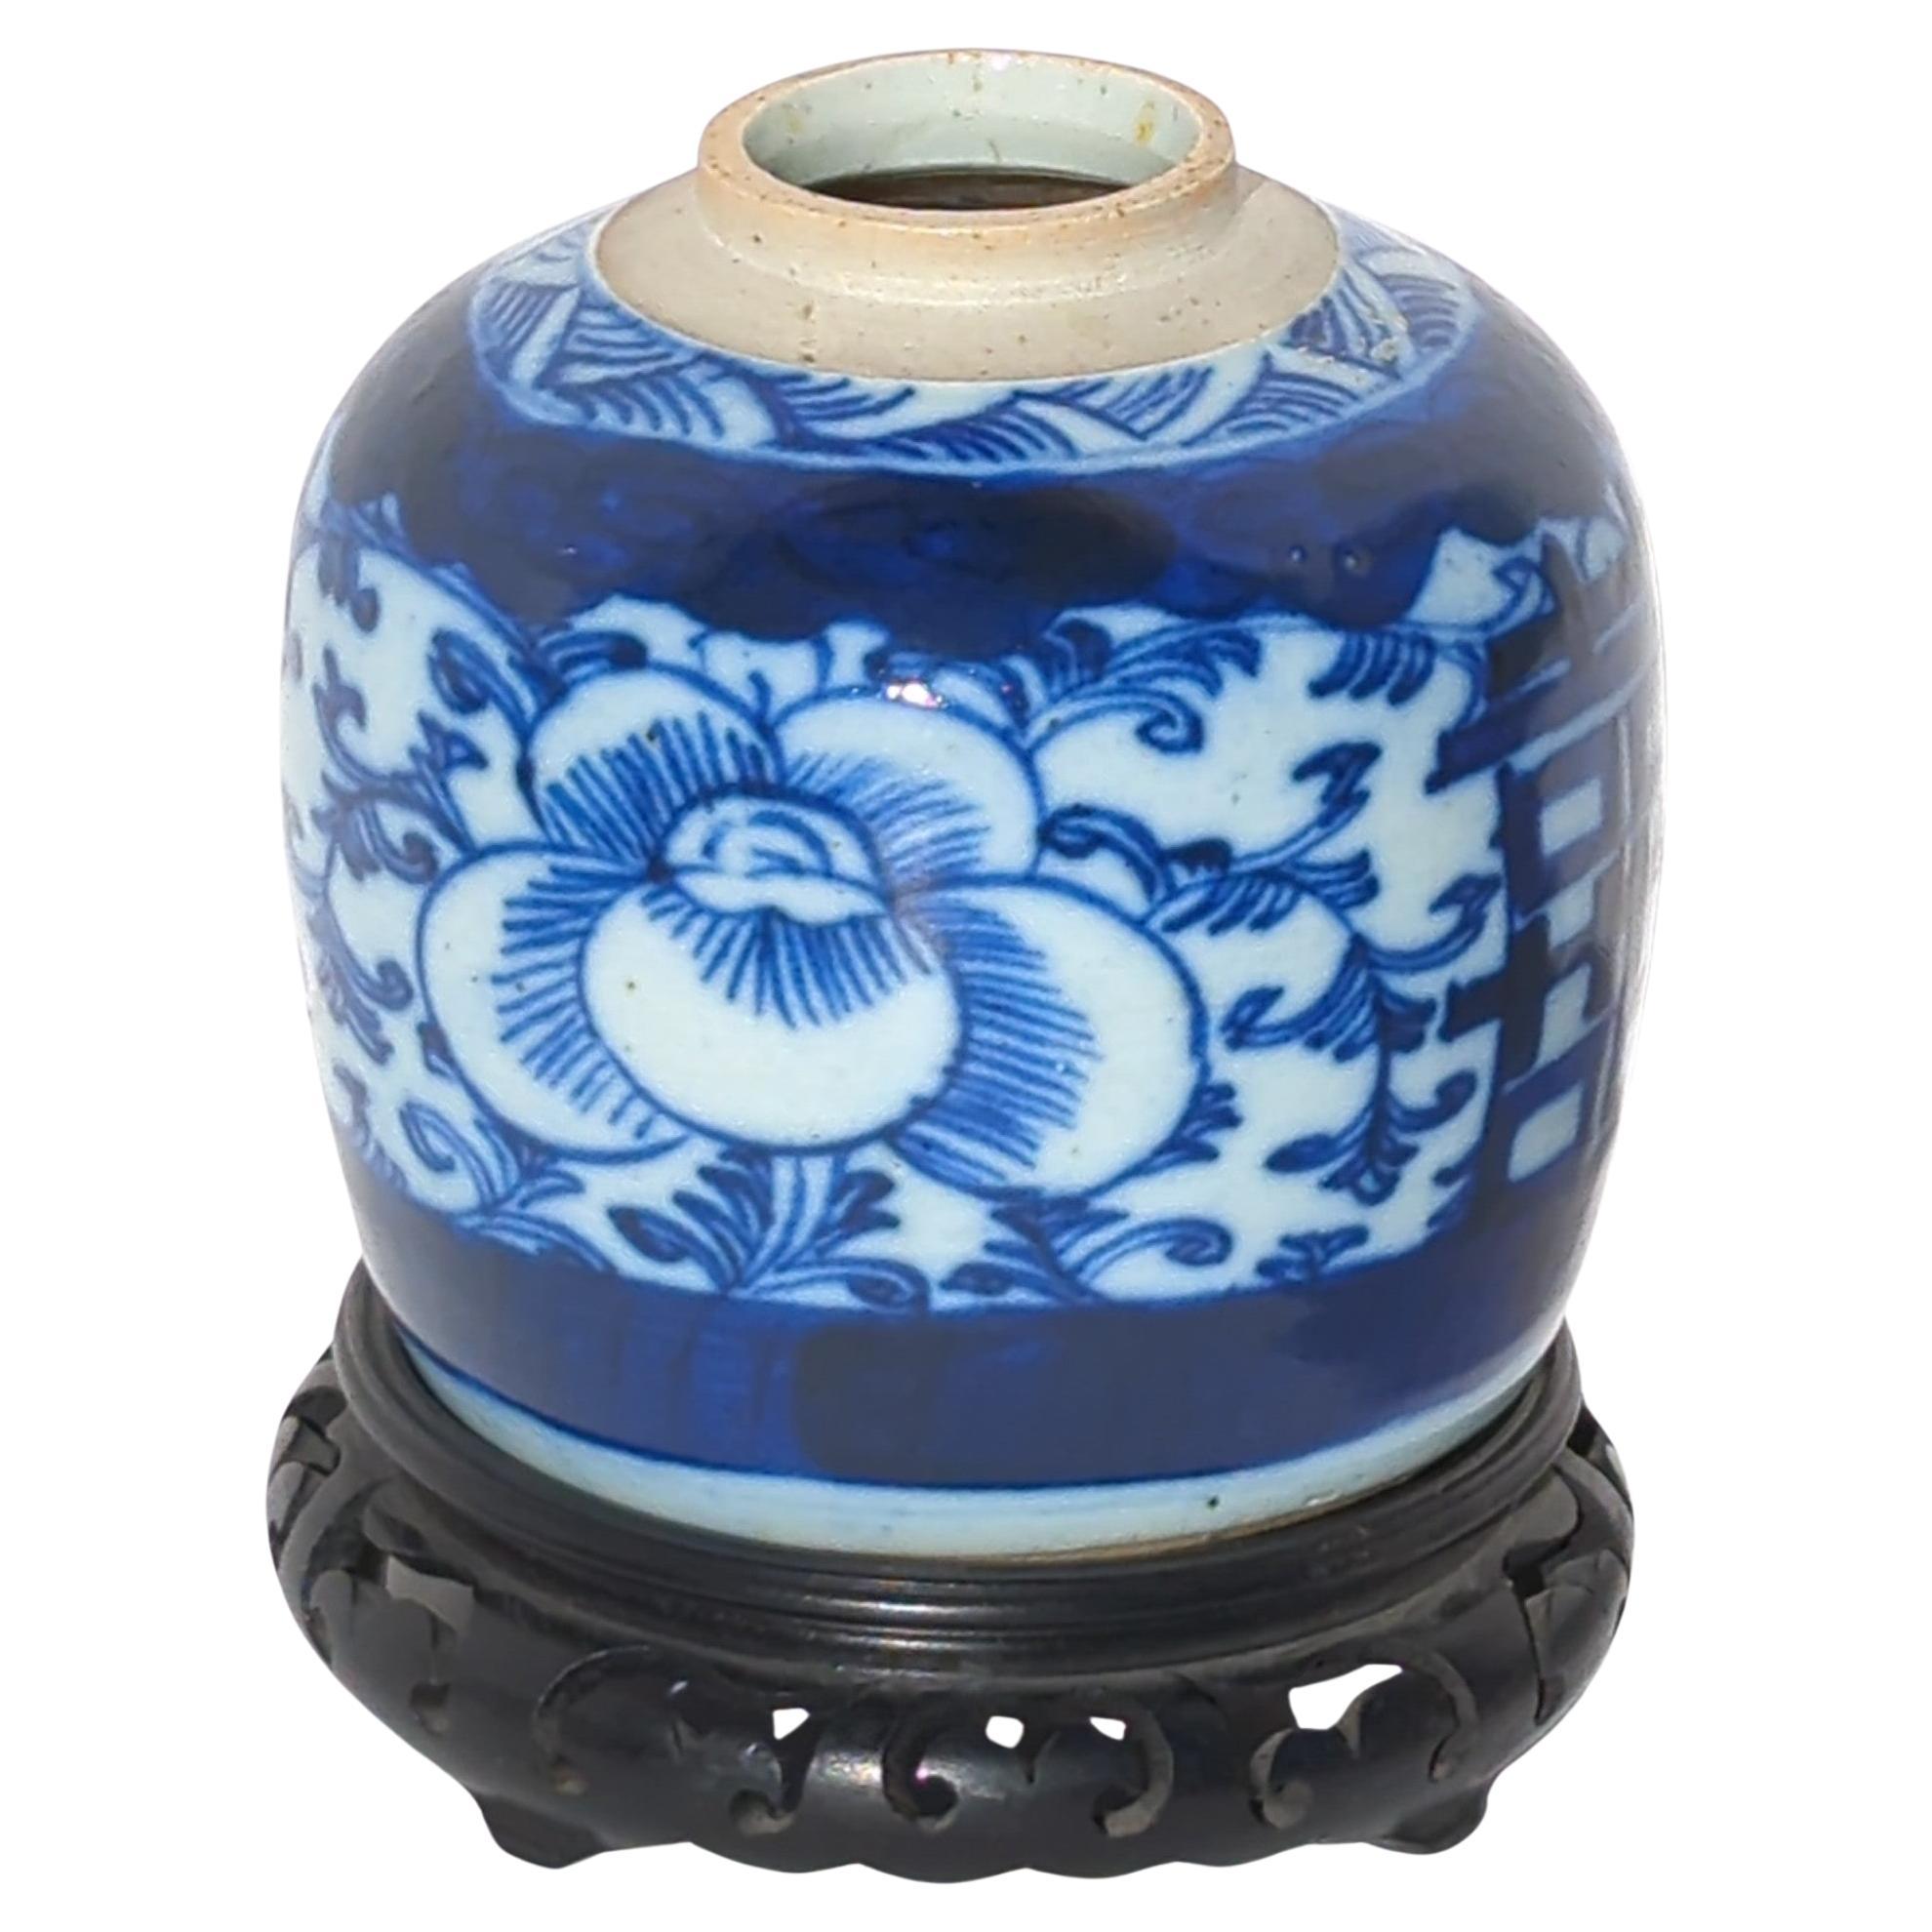 Antike chinesische Ingwerdose aus der Qing-Dynastie in Blau und Weiß, handbemalt mit zwei doppelten Glückszeichen auf einem Hintergrund aus Blattwerk und großen kobaltblauen Päonienblüten. 

Wird mit Hartholzständer geliefert.

Größe der Vase: H: